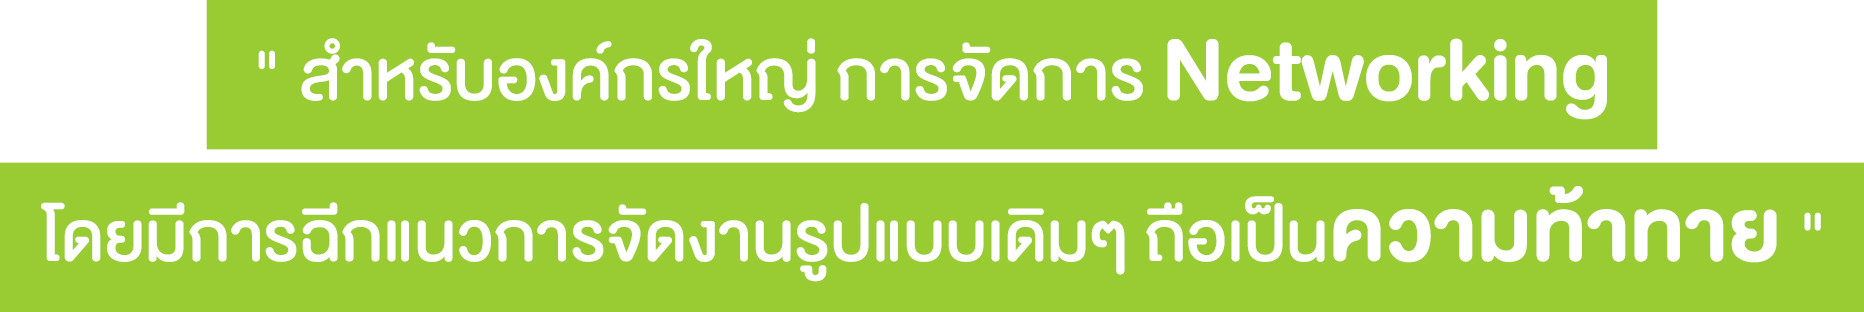 การจัดการ Networking ความท้าทายองค์กรใหญ่ - Startup Thailand